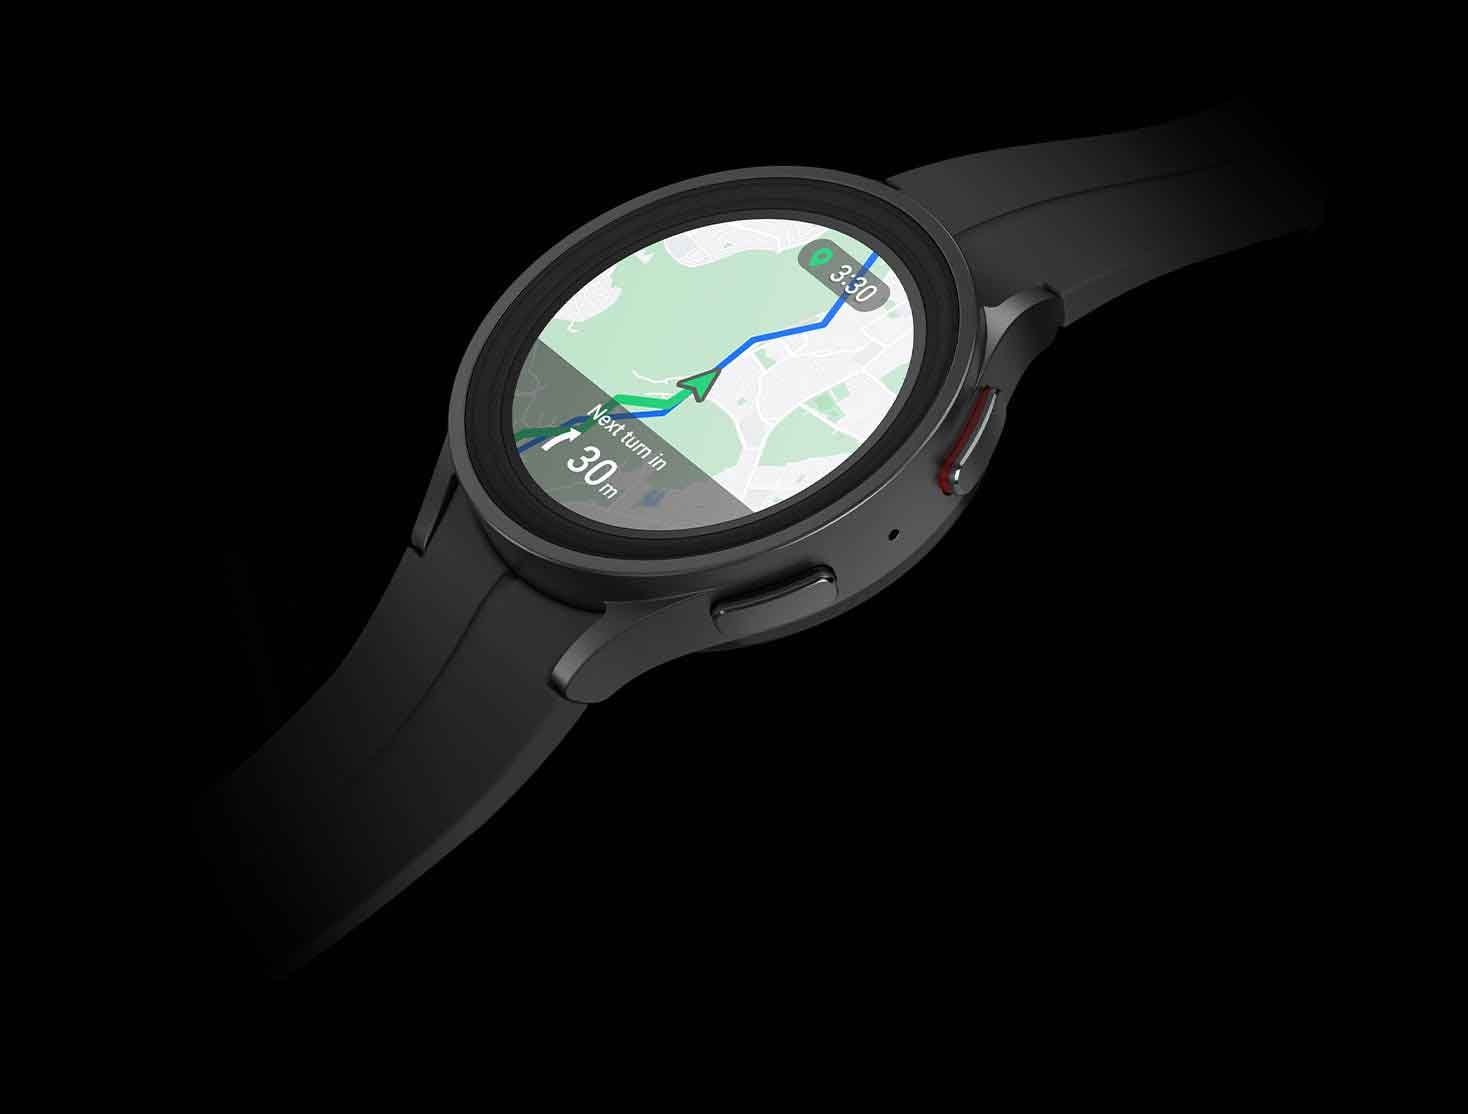 Titanijum Galaxy Watch5 Pro u crnoj boji koji prikazuje mapu na licu sata sa funkcijom navigacije skretanje po skretanje.